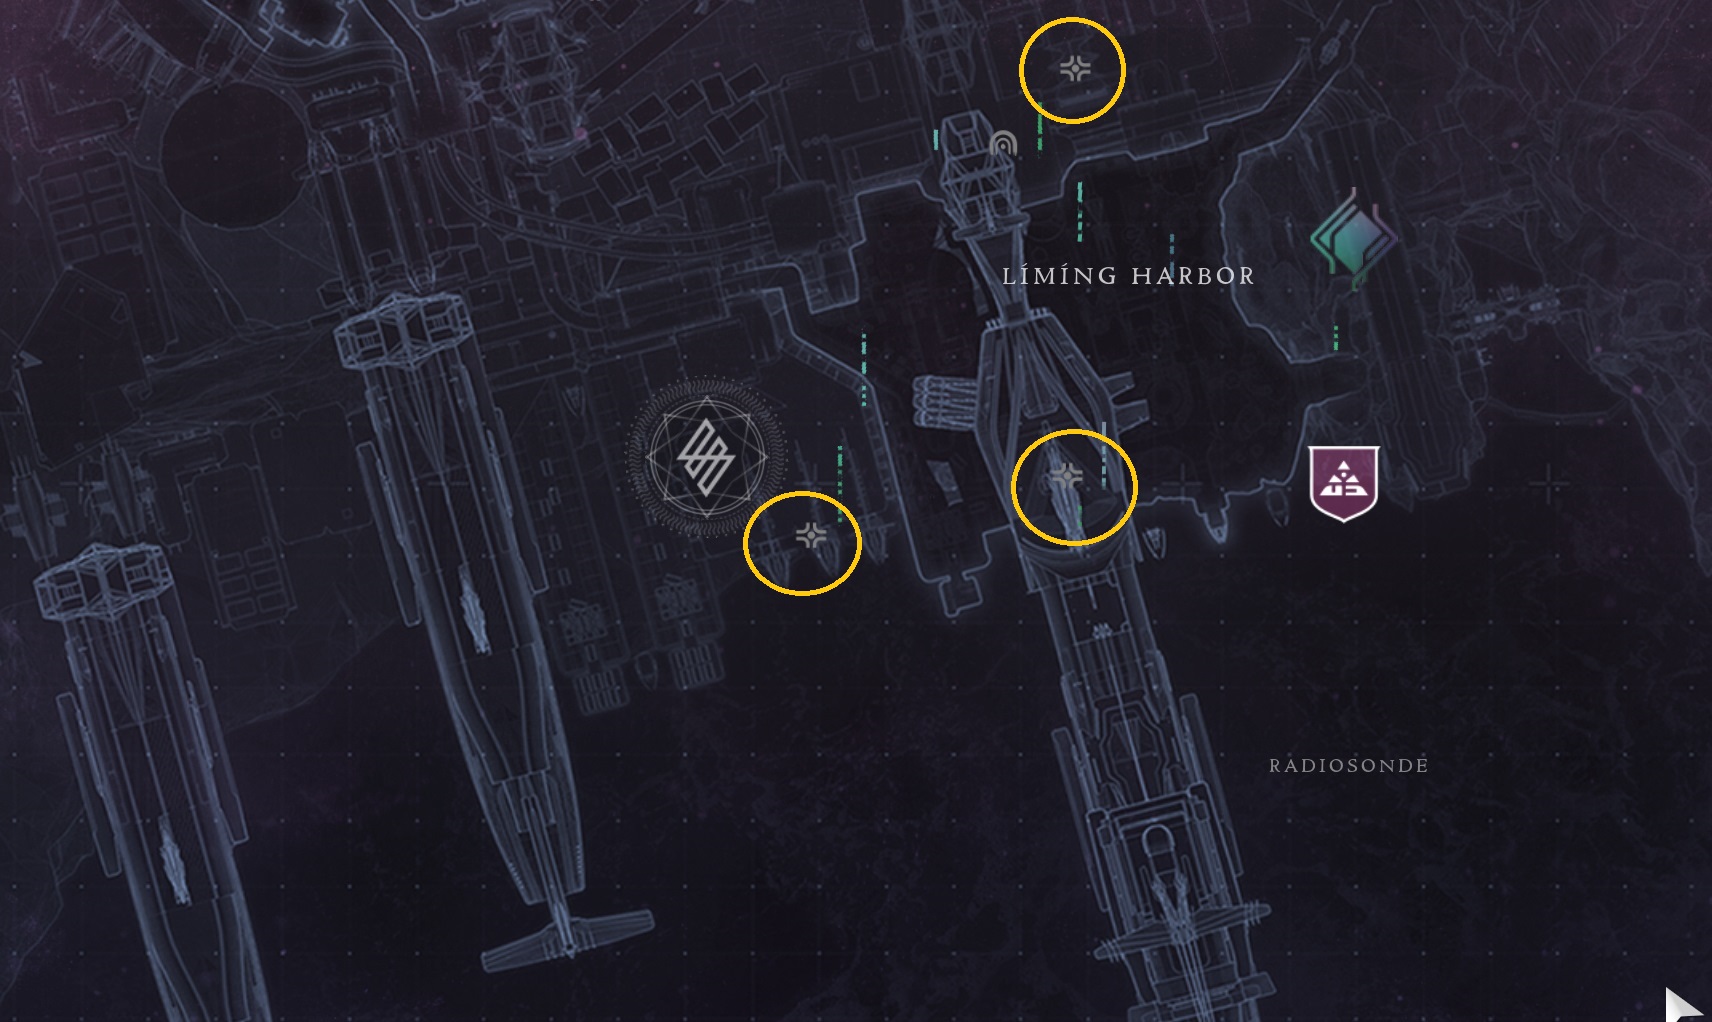 Destiny 2: Lightfall Liming Harbor Region Chest Guide